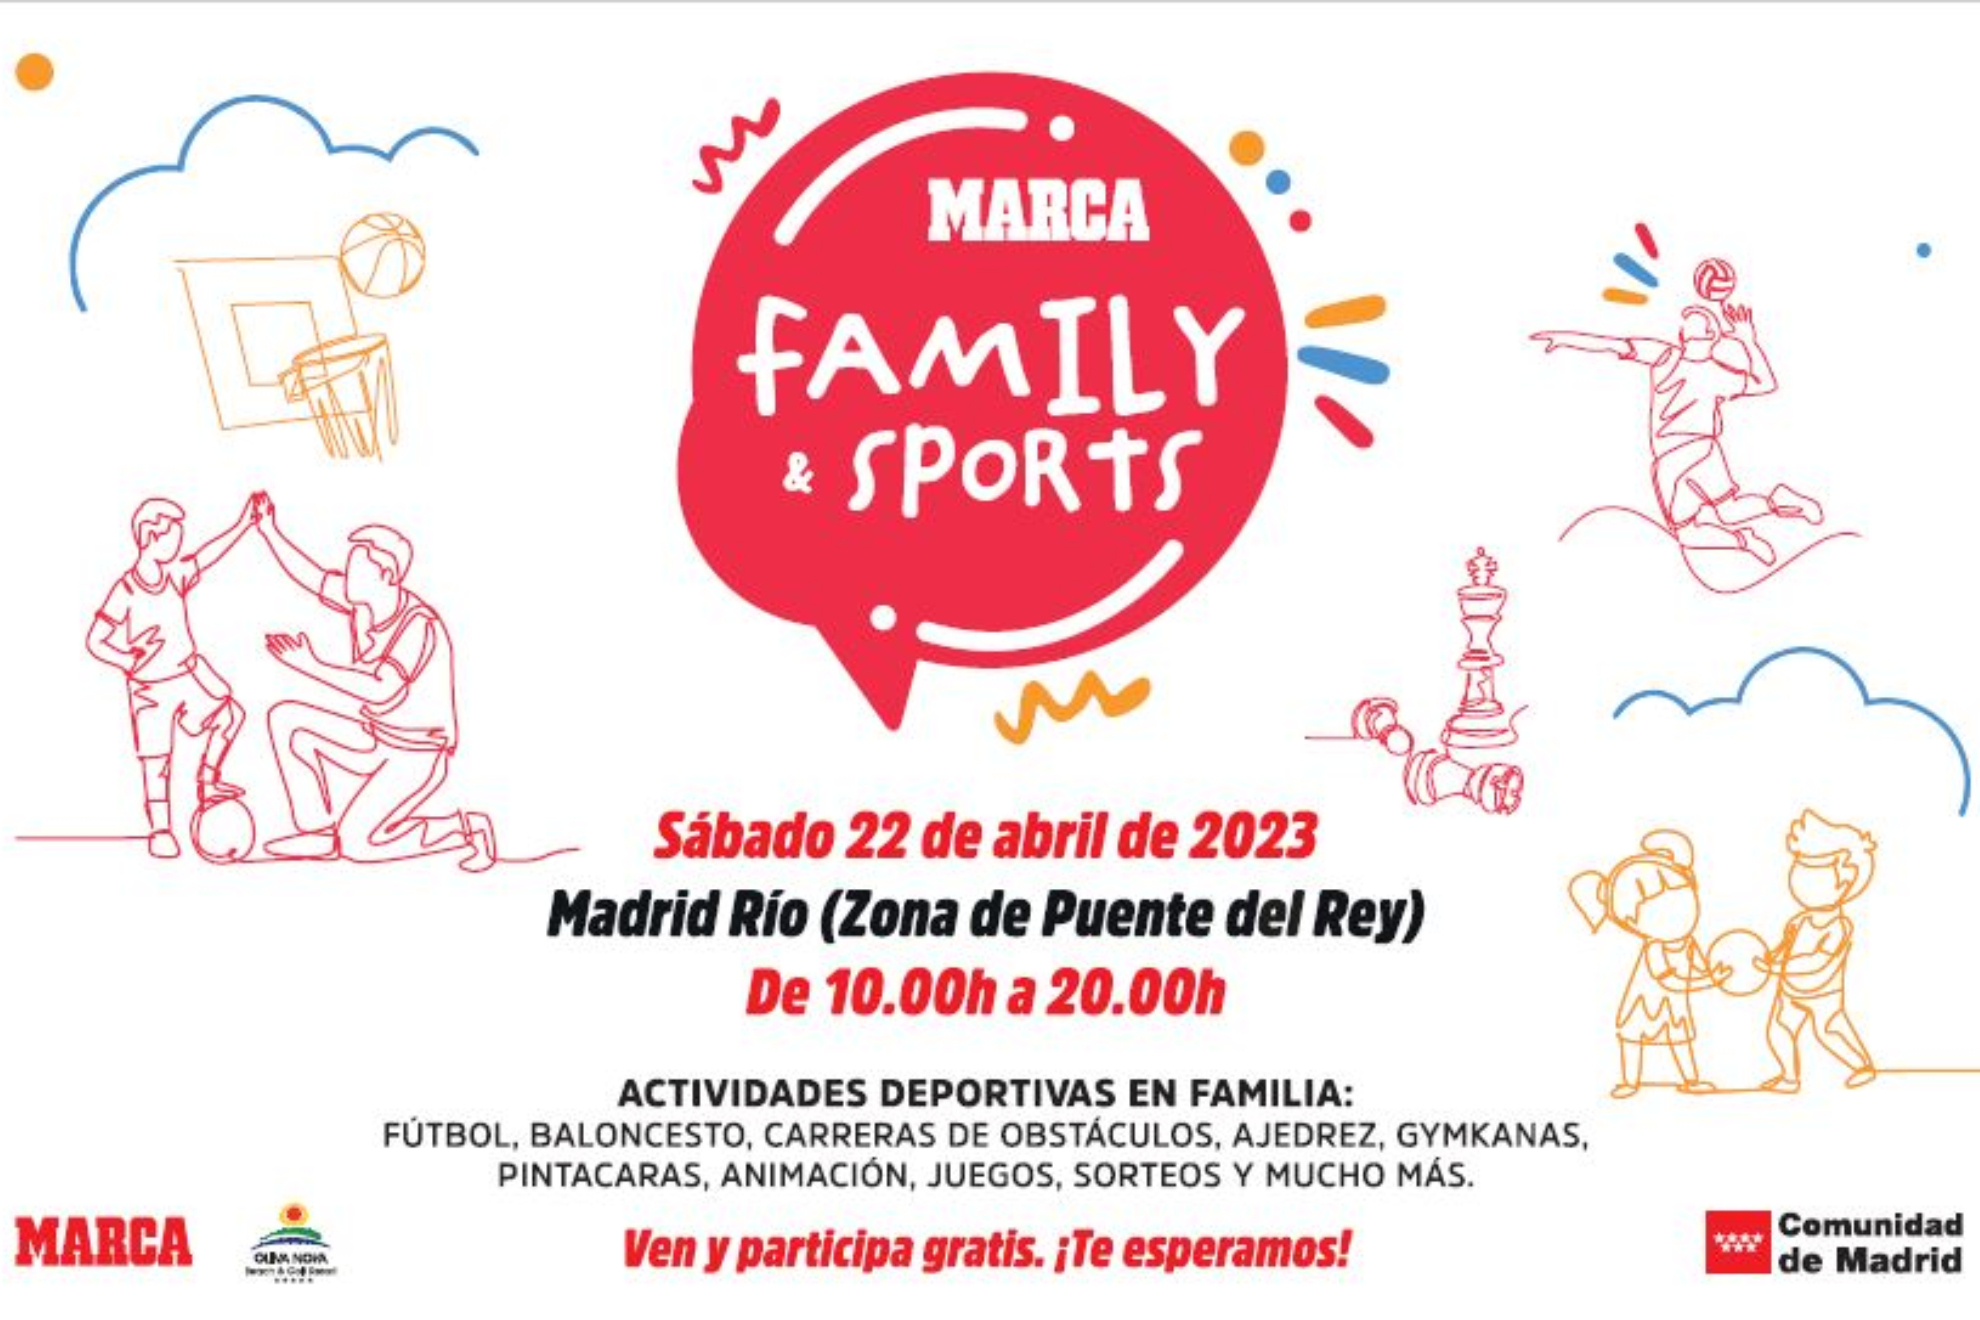 MARCA Family & Sports: tienes una cita el 22 de abril en Madrid Río.